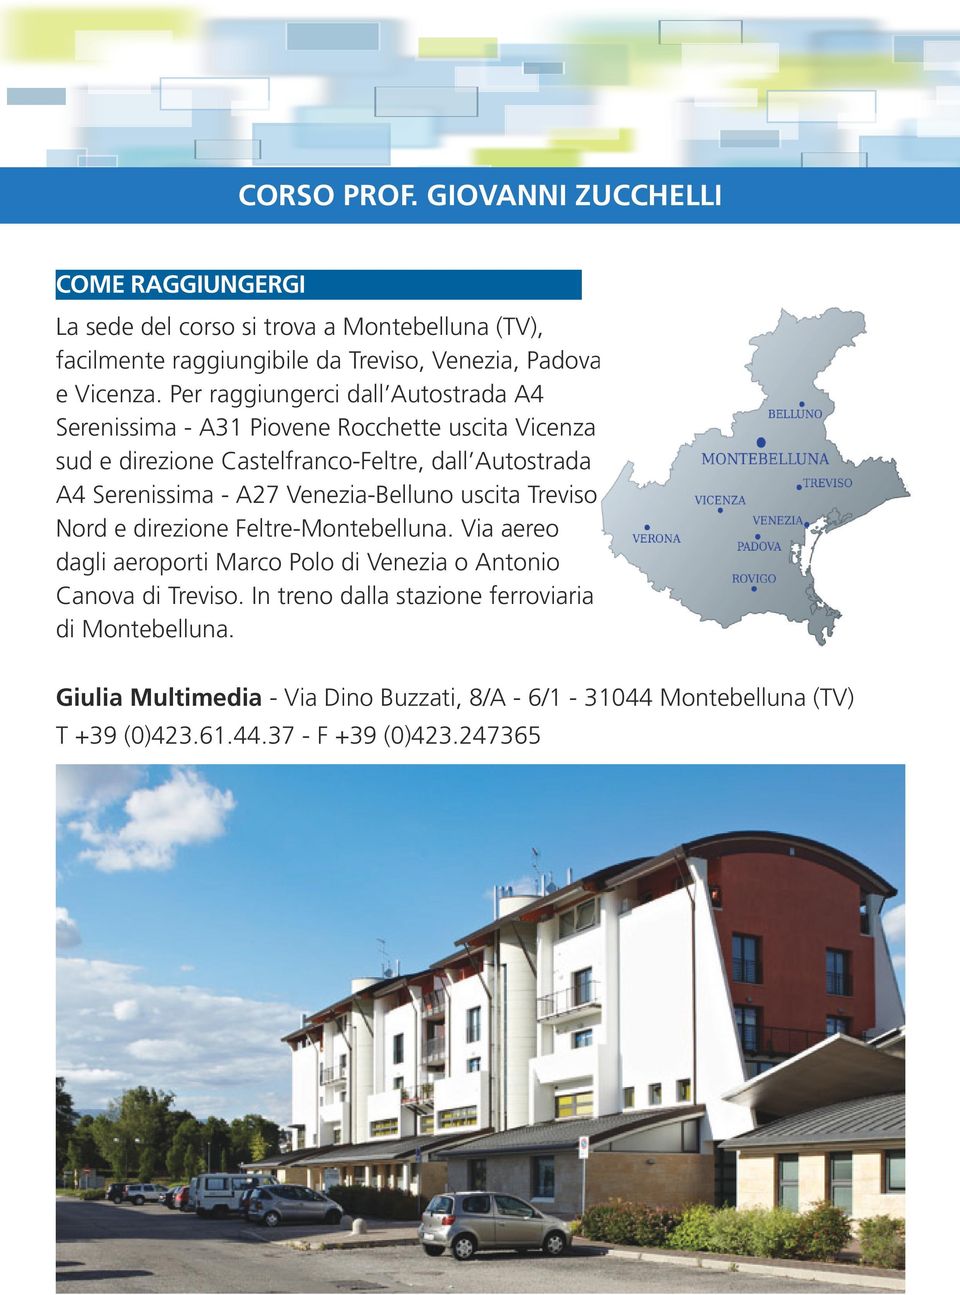 Per raggiungerci dall Autostrada A4 Serenissima - A31 Piovene Rocchette uscita Vicenza sud e direzione Castelfranco-Feltre, dall Autostrada A4 Serenissima -